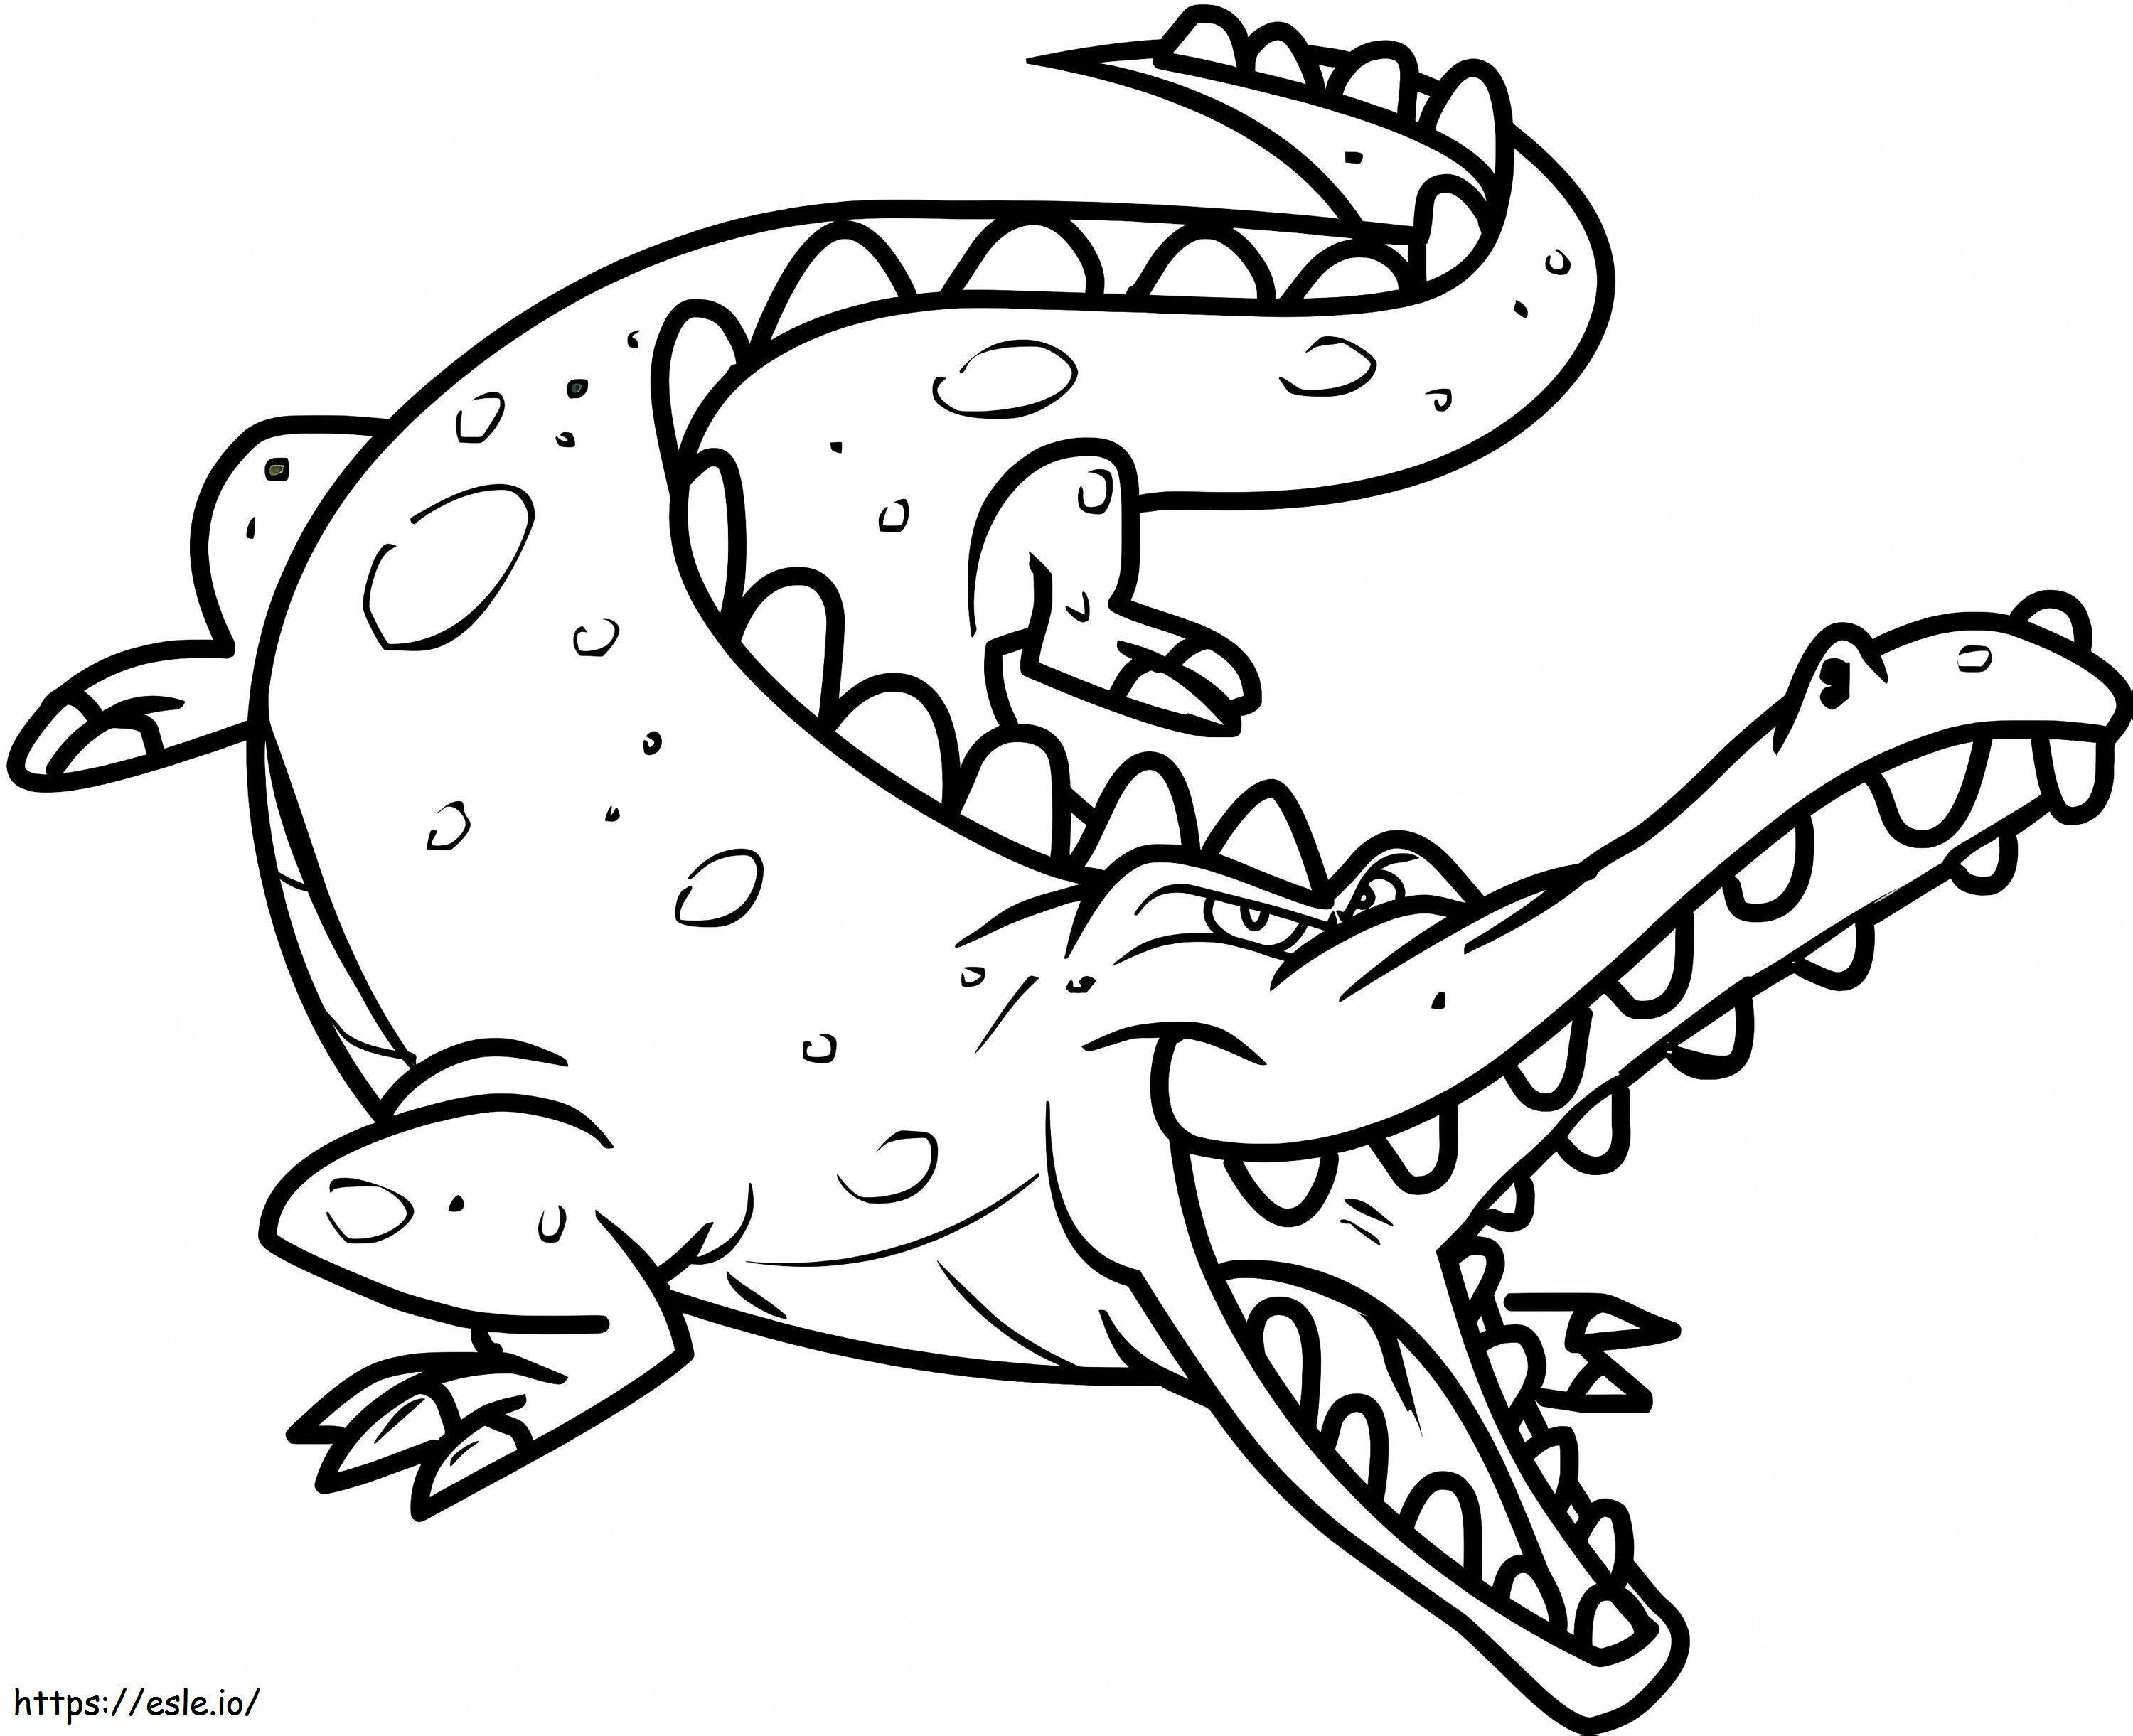 Crocodilo de desenho animado para colorir